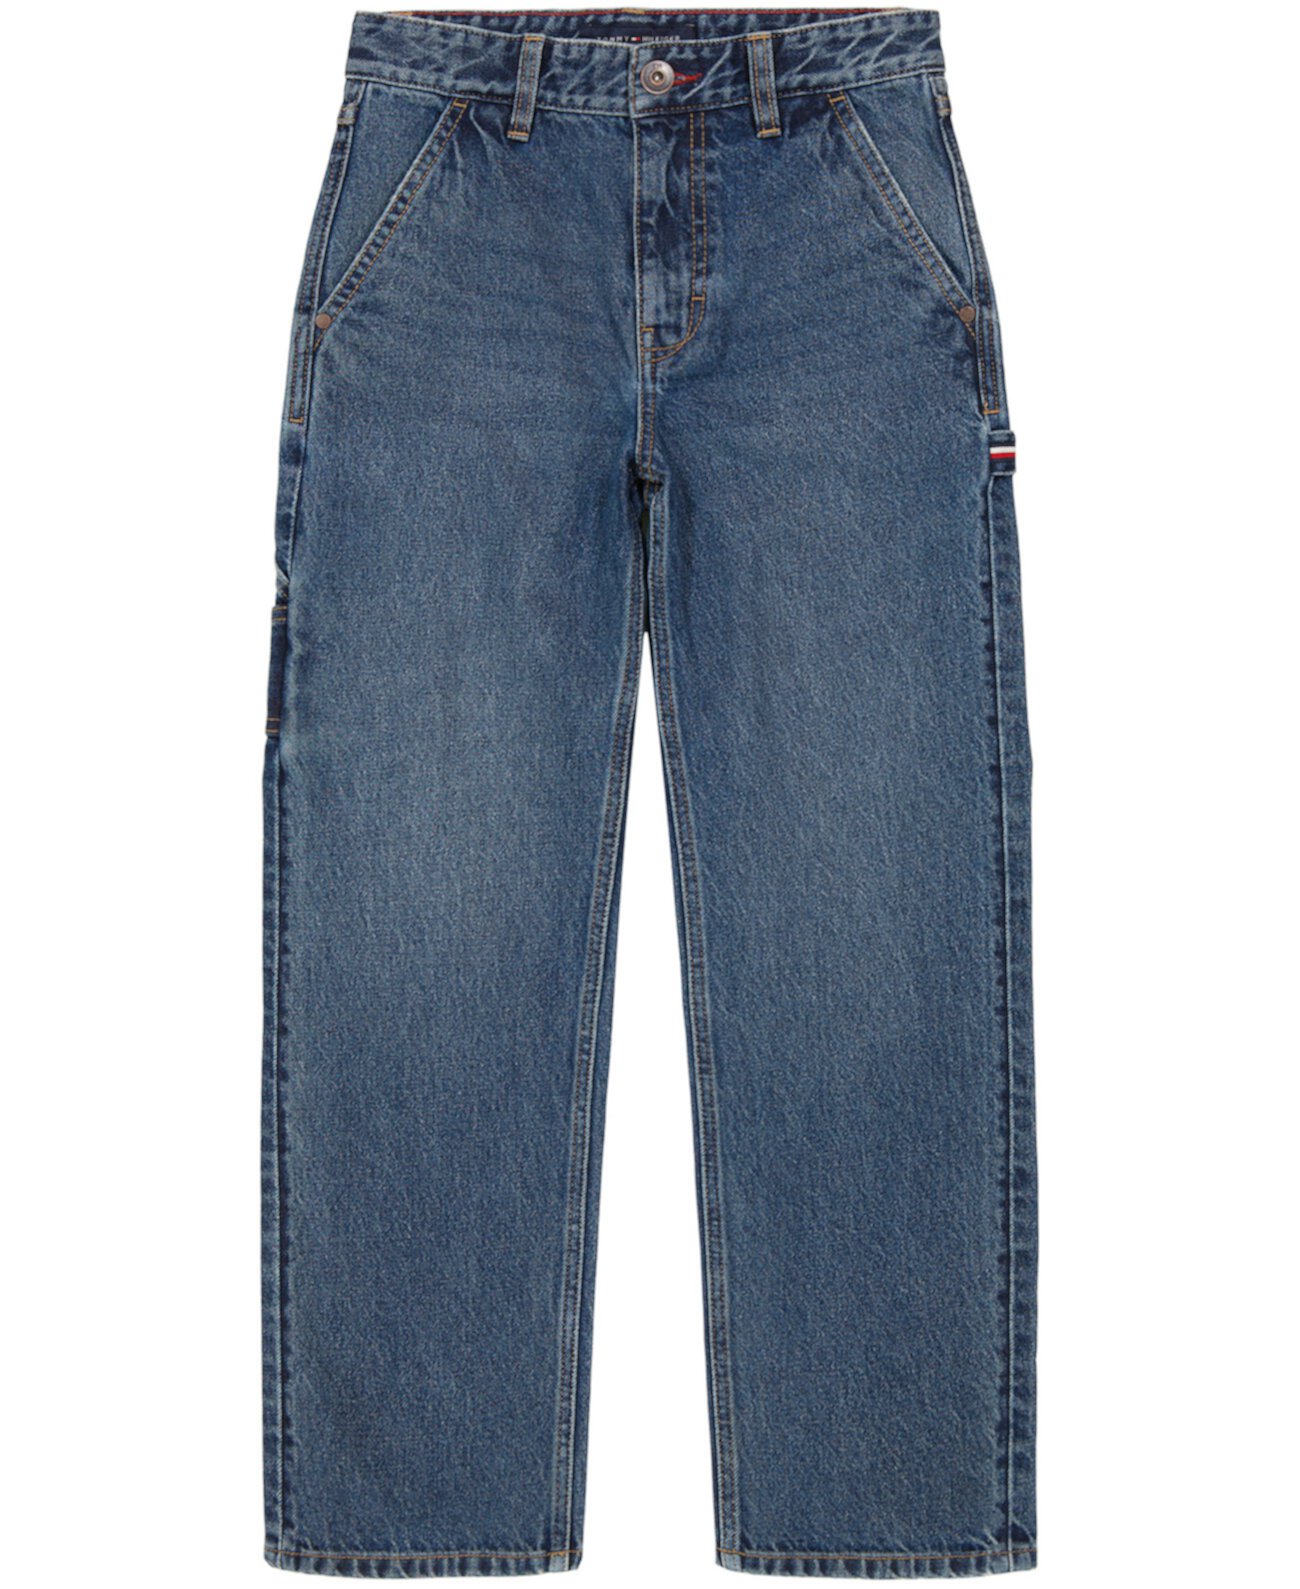 Свободные джинсовые джинсы Carpenter для маленьких мальчиков Tommy Hilfiger